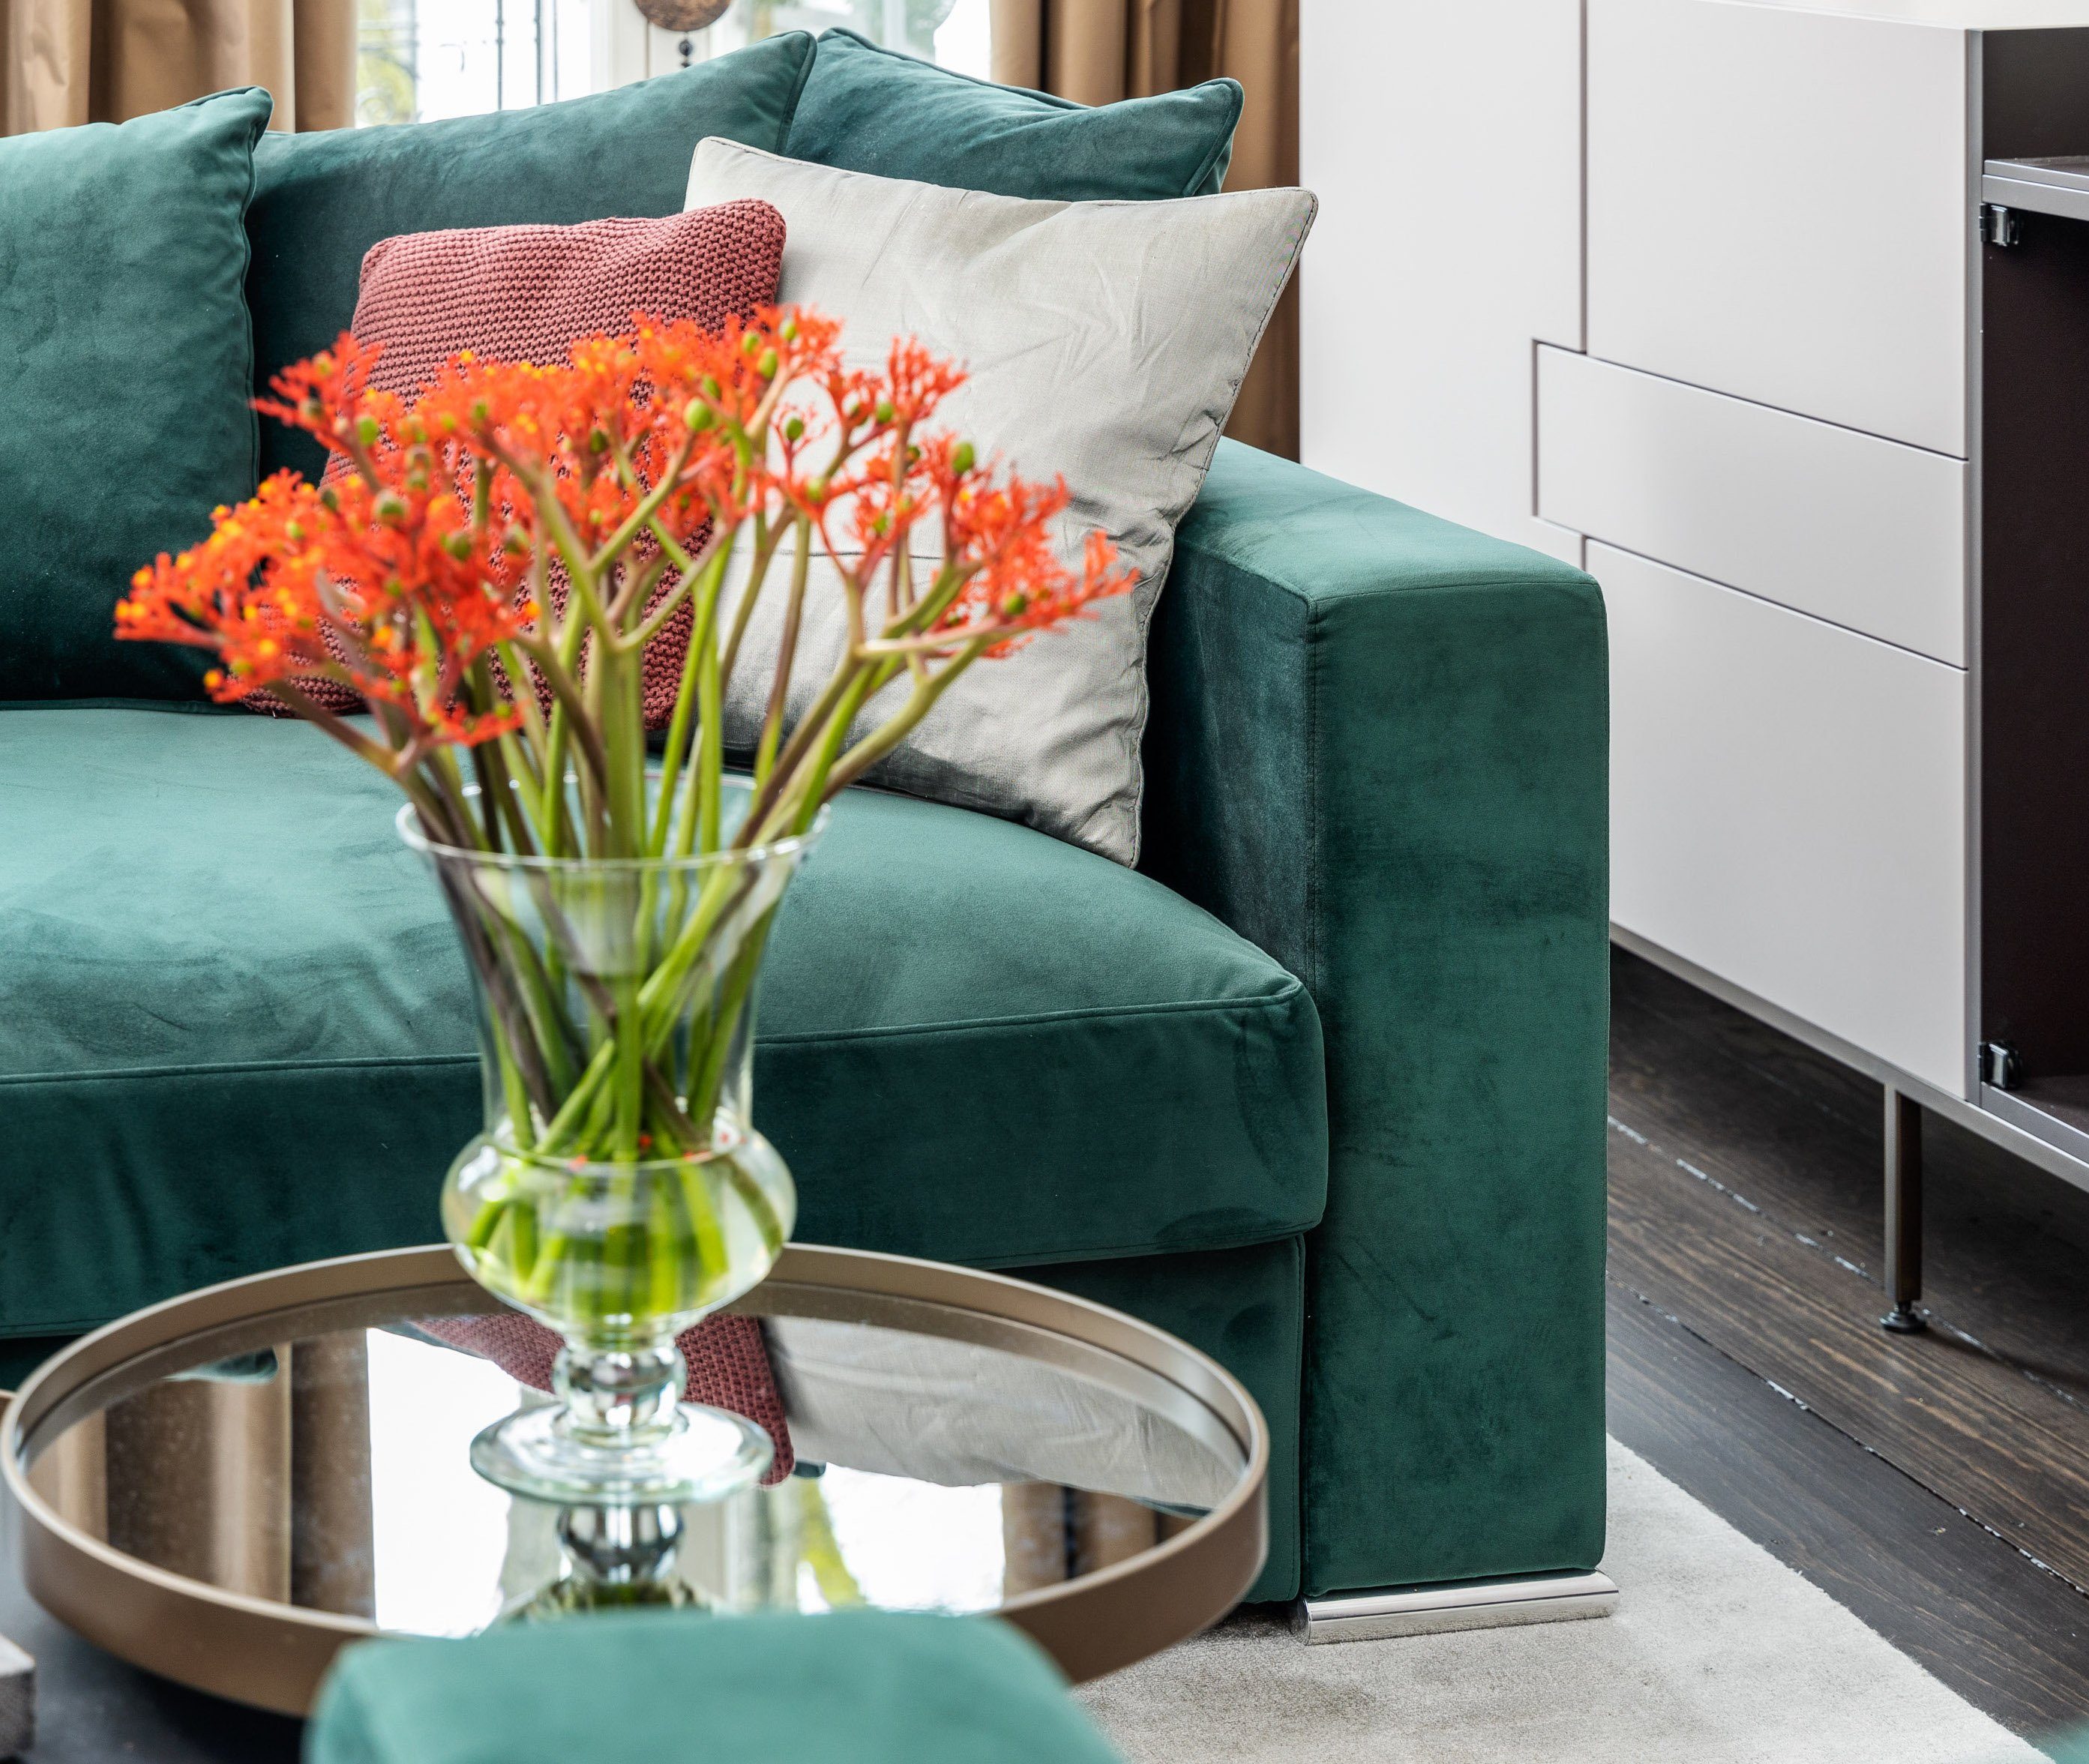 AMARIS Elements gemütlich od. Sitzer (Samt) 'George' 4 Grün 2 Stoff-Bezug 2m, Samt Größen Sofa Couch